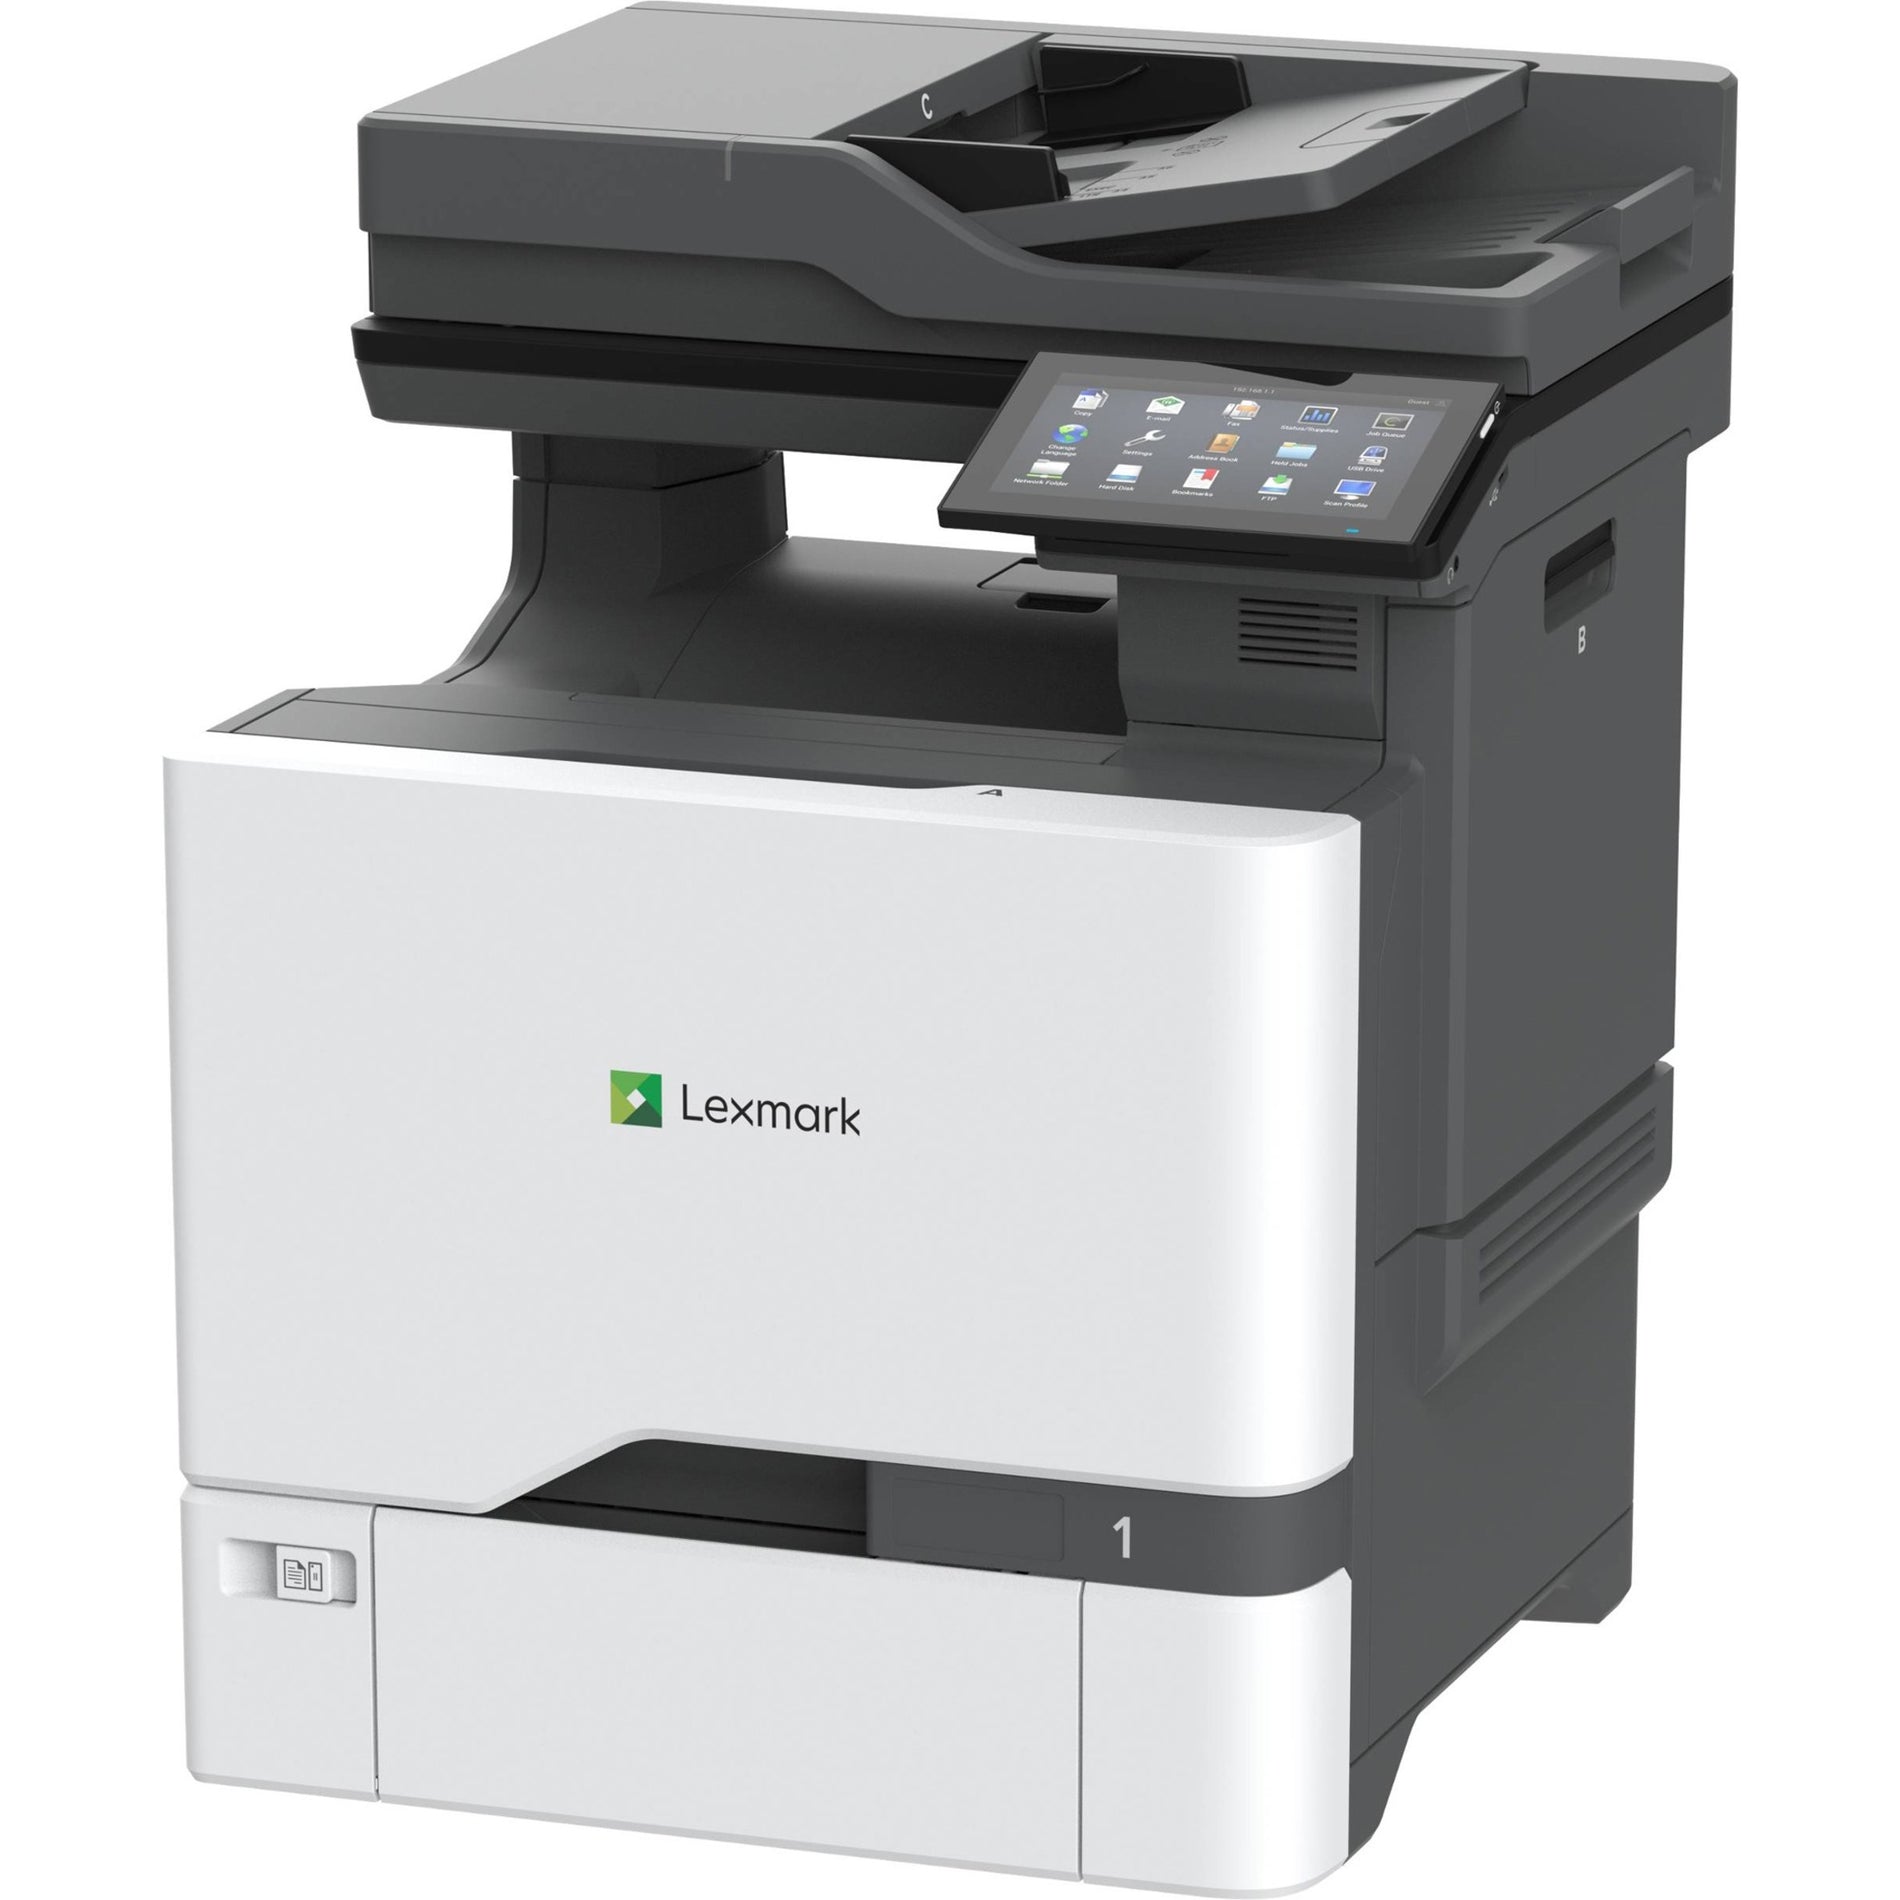 雷士 Lexmark 47C9500 CX730de 彩色激光多功能打印机，自动双面打印，42 ppm打印速度，2400 x 600 dpi 分辨率.品牌名称: 雷士.品牌翻译: Lexmark.